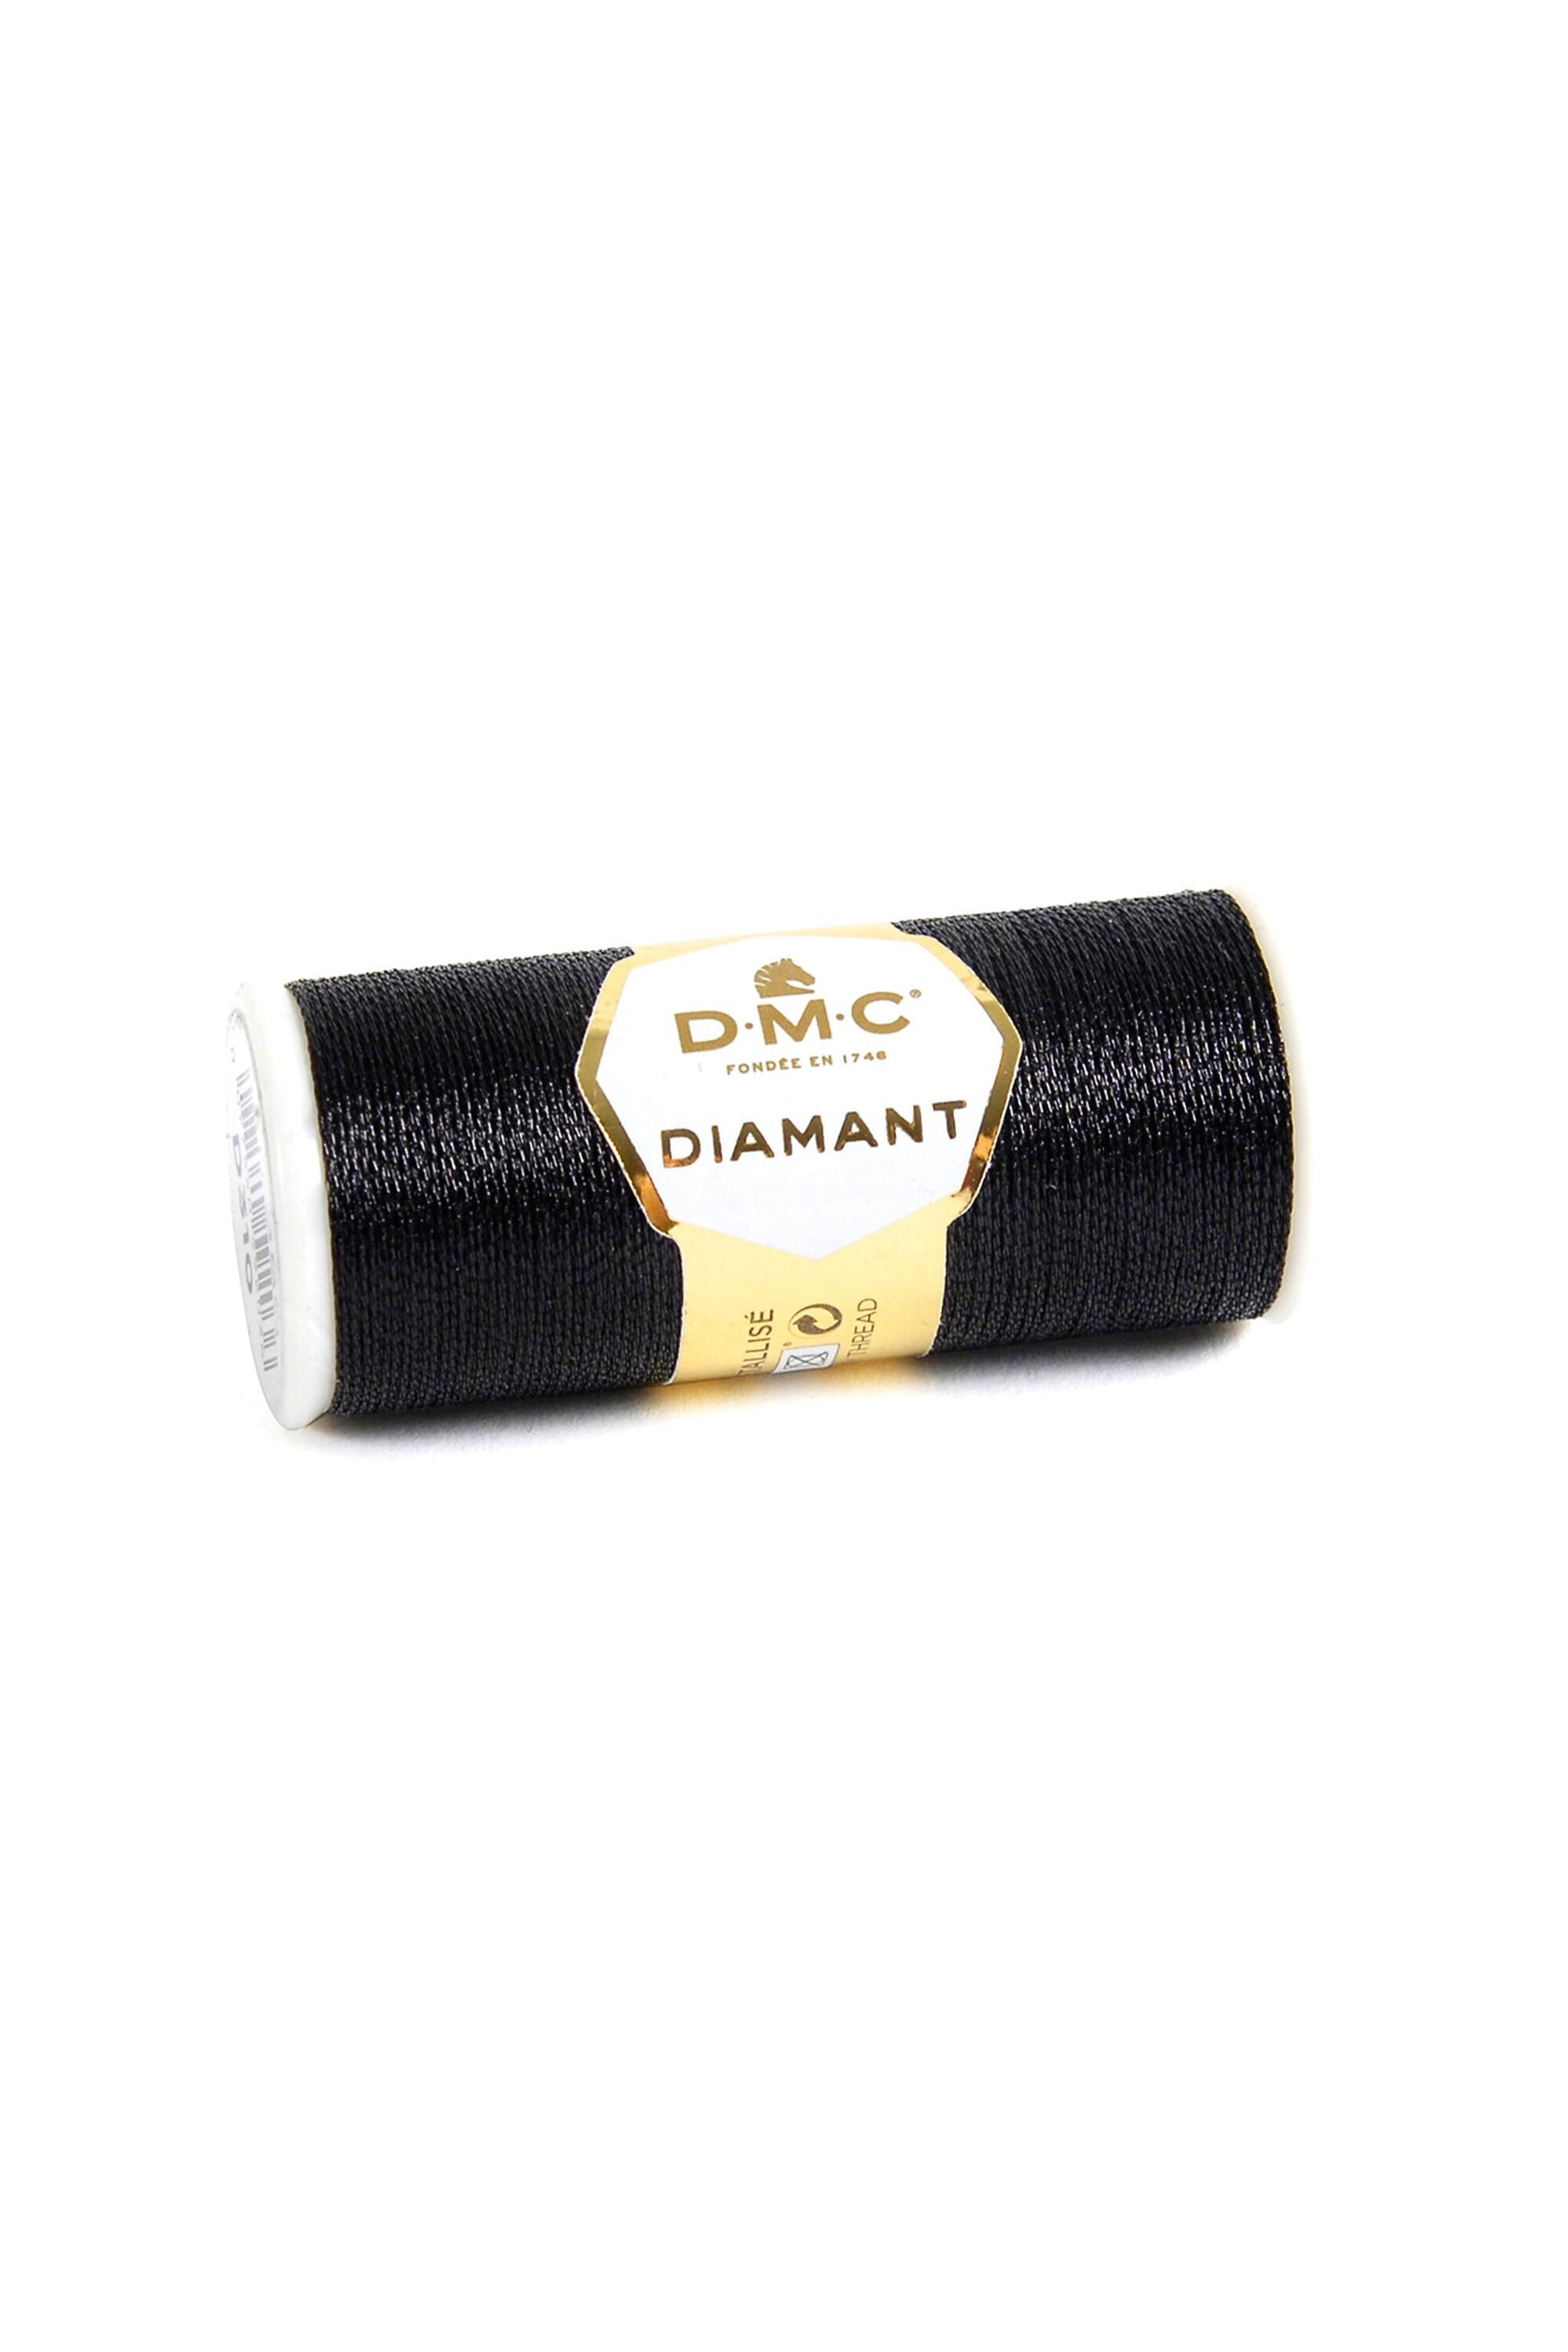 Diamant Metallic Thread - Black - D310